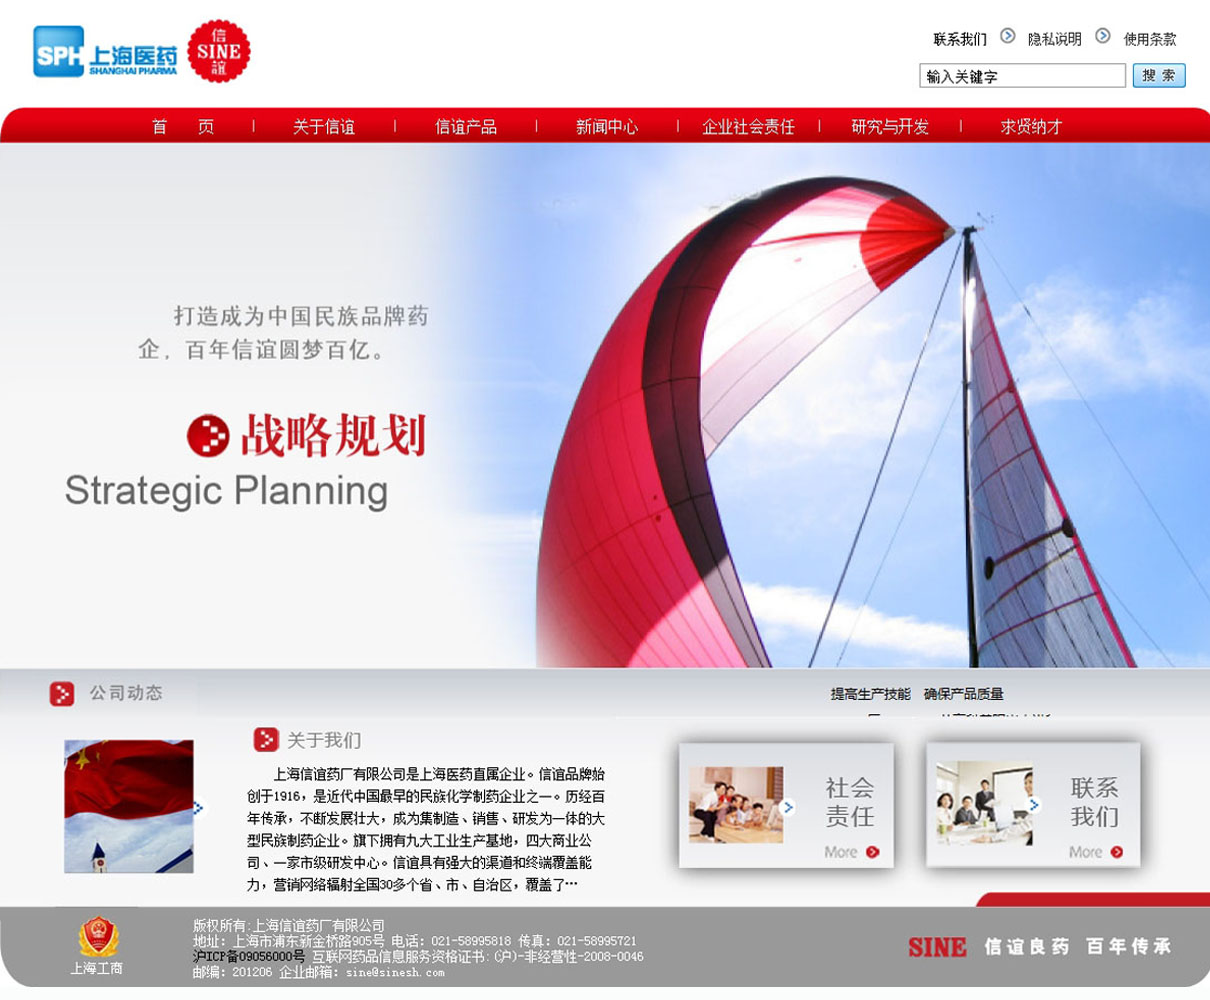 上海信谊药厂有限公司企业宣传型网站设计